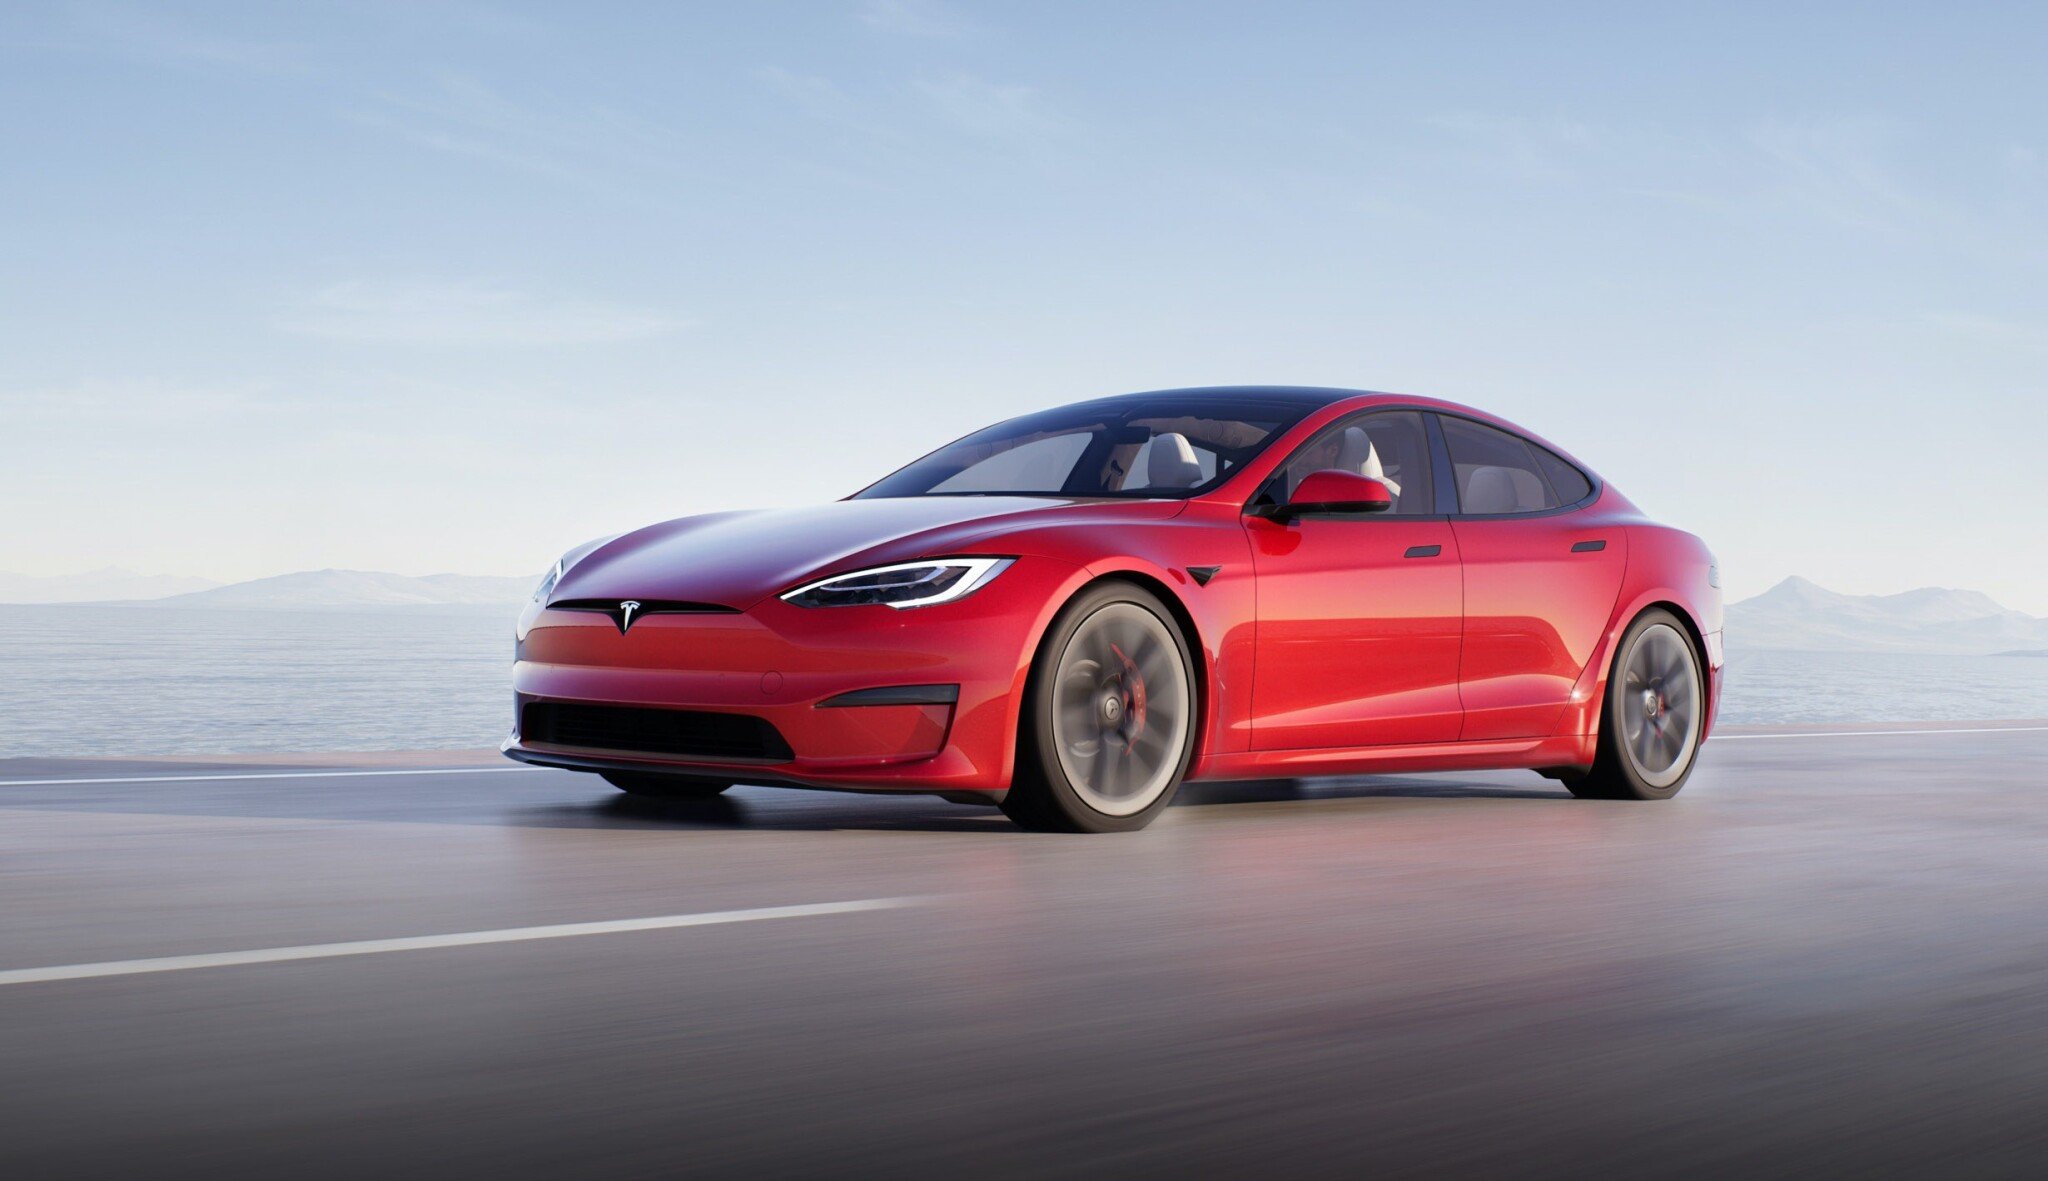 Automobilka Tesla přesouvá svou centrálu ze Silicon Valley do Texasu